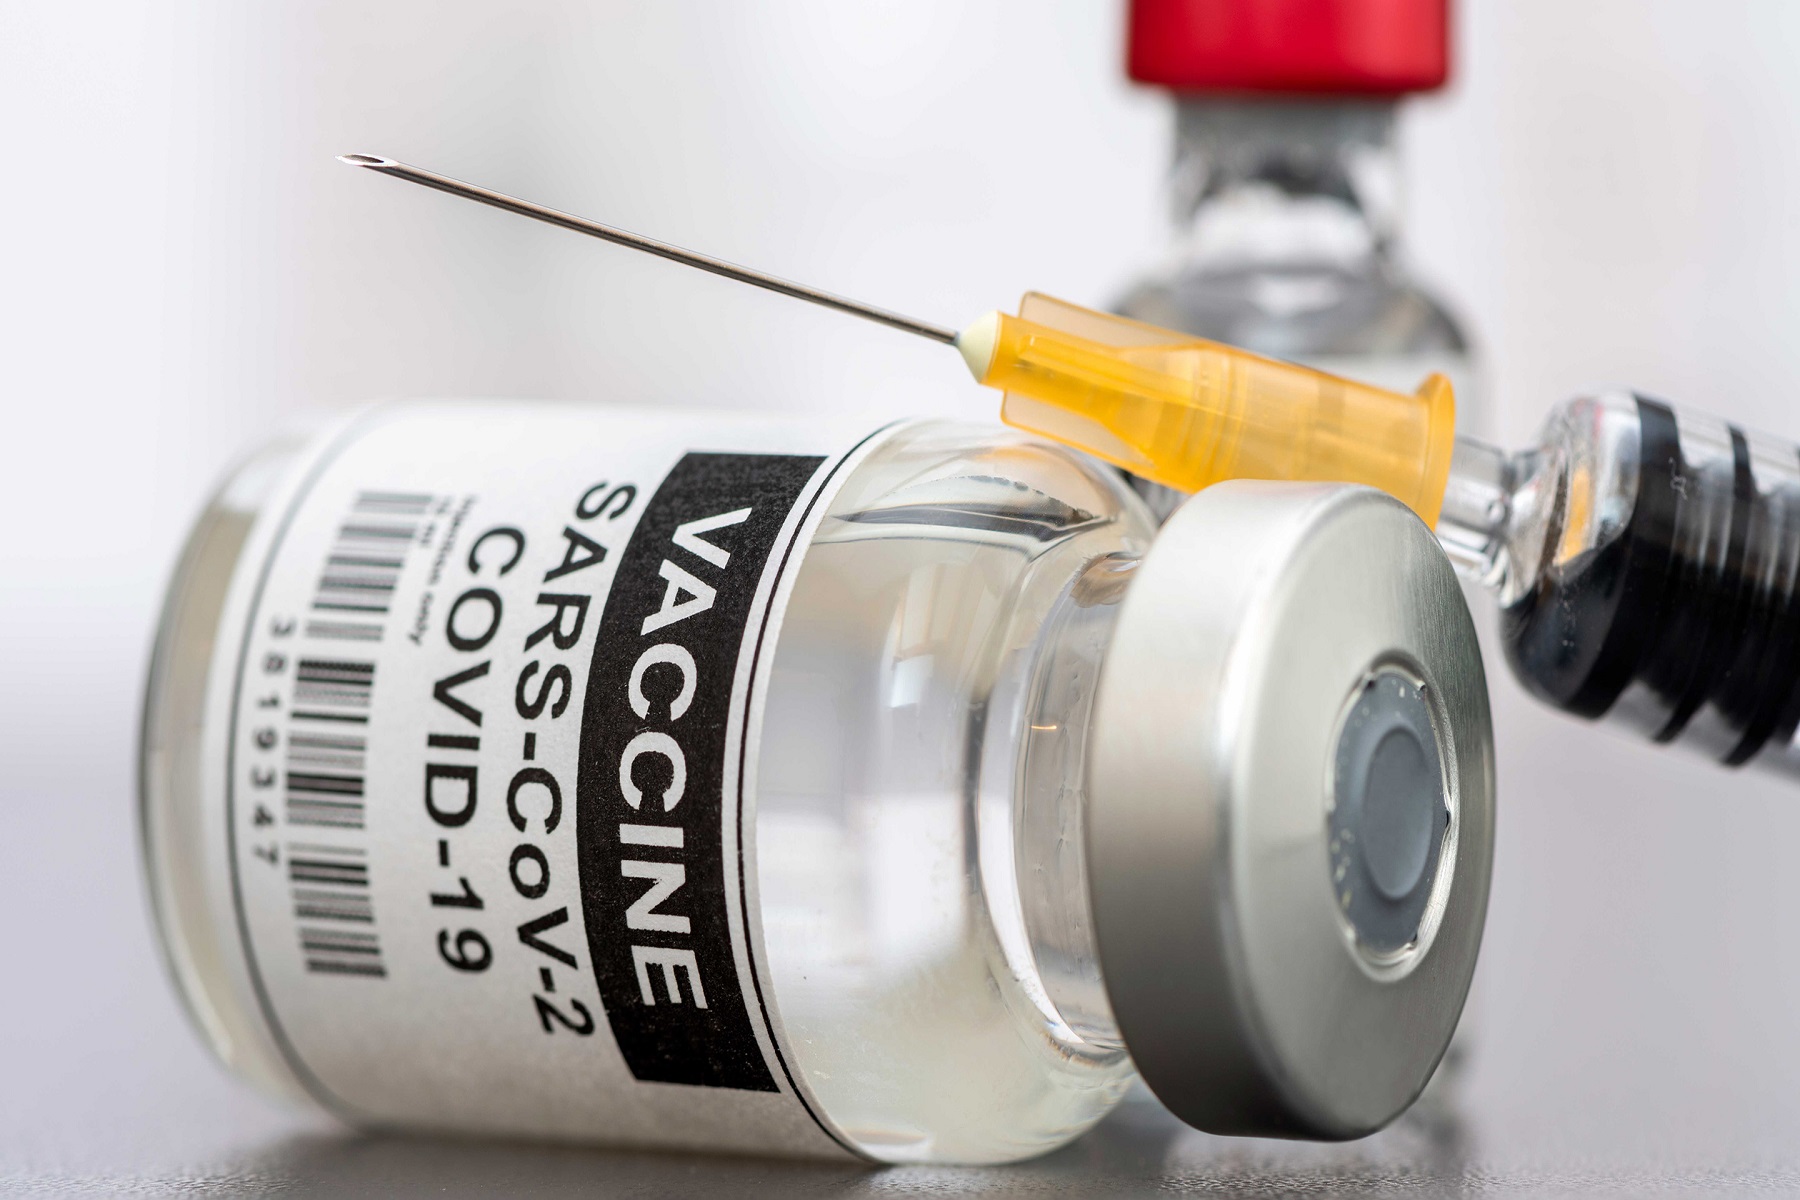 Εμβολιασμός Ελευθερία: Ποια μηνύματα είναι πιο πιθανό να αντιμετωπίσουν τη διστακτικότητα του εμβολίου;